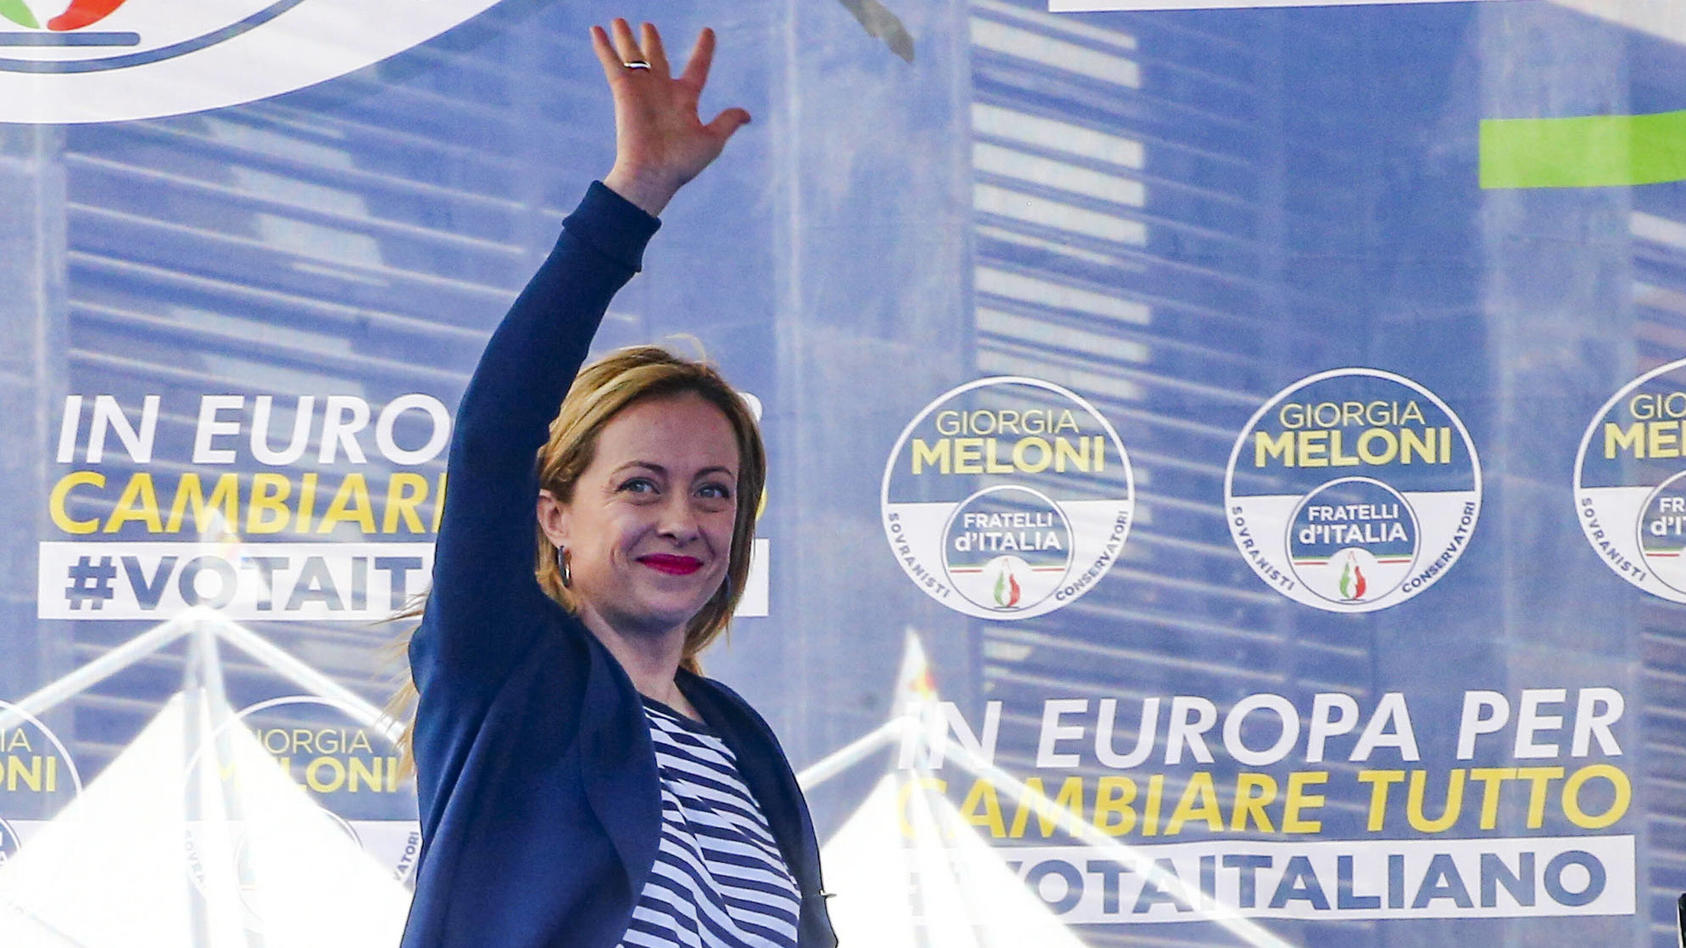 giorgia-meloni-und-ihre-partei-gewannen-die-wahl-in-italien-bei-ihr-handelt-es-sich-um-eine-neofaschistin